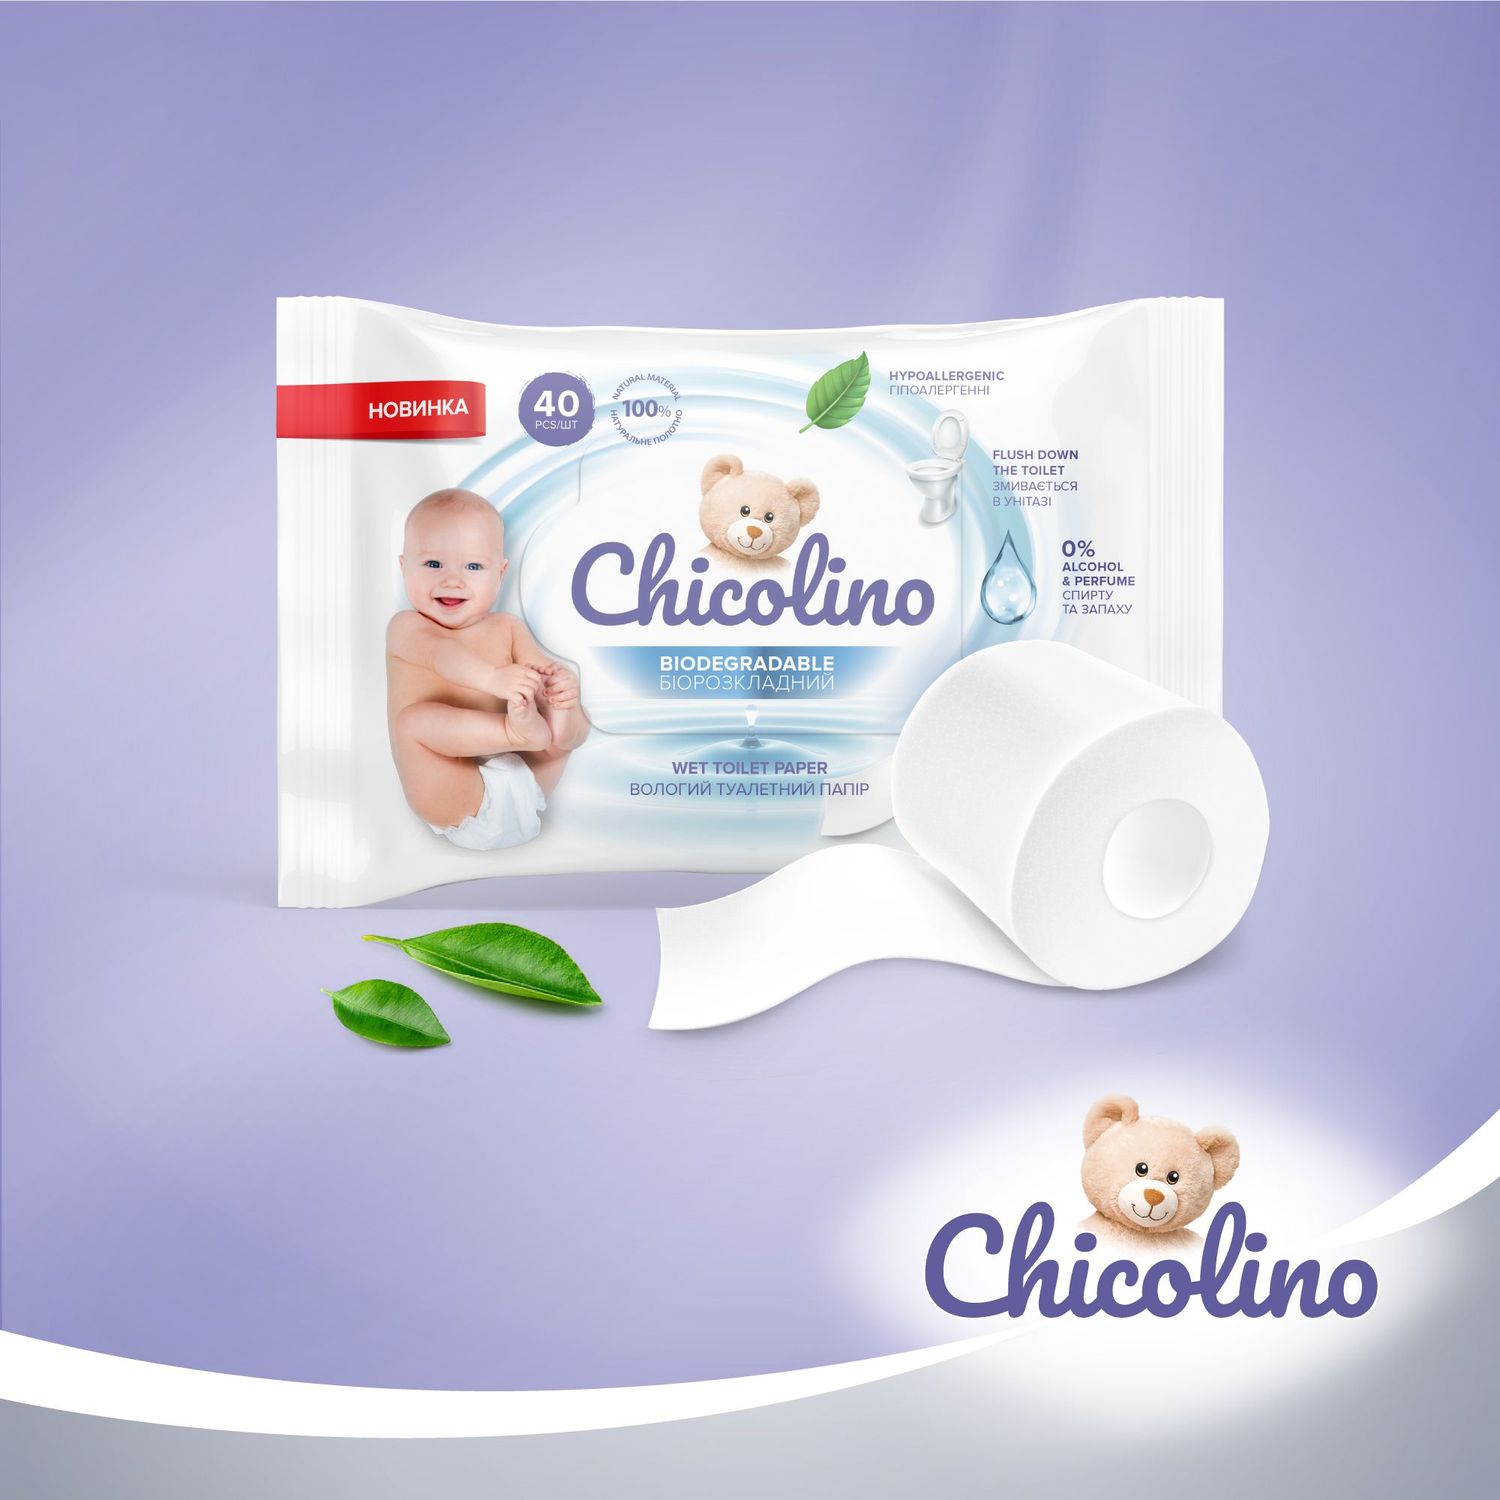 Набір біорозкладного вологого туалетного паперу Chicolino для дітей та дорослих, 640 шт. (16 уп. по 40 шт.) - фото 7